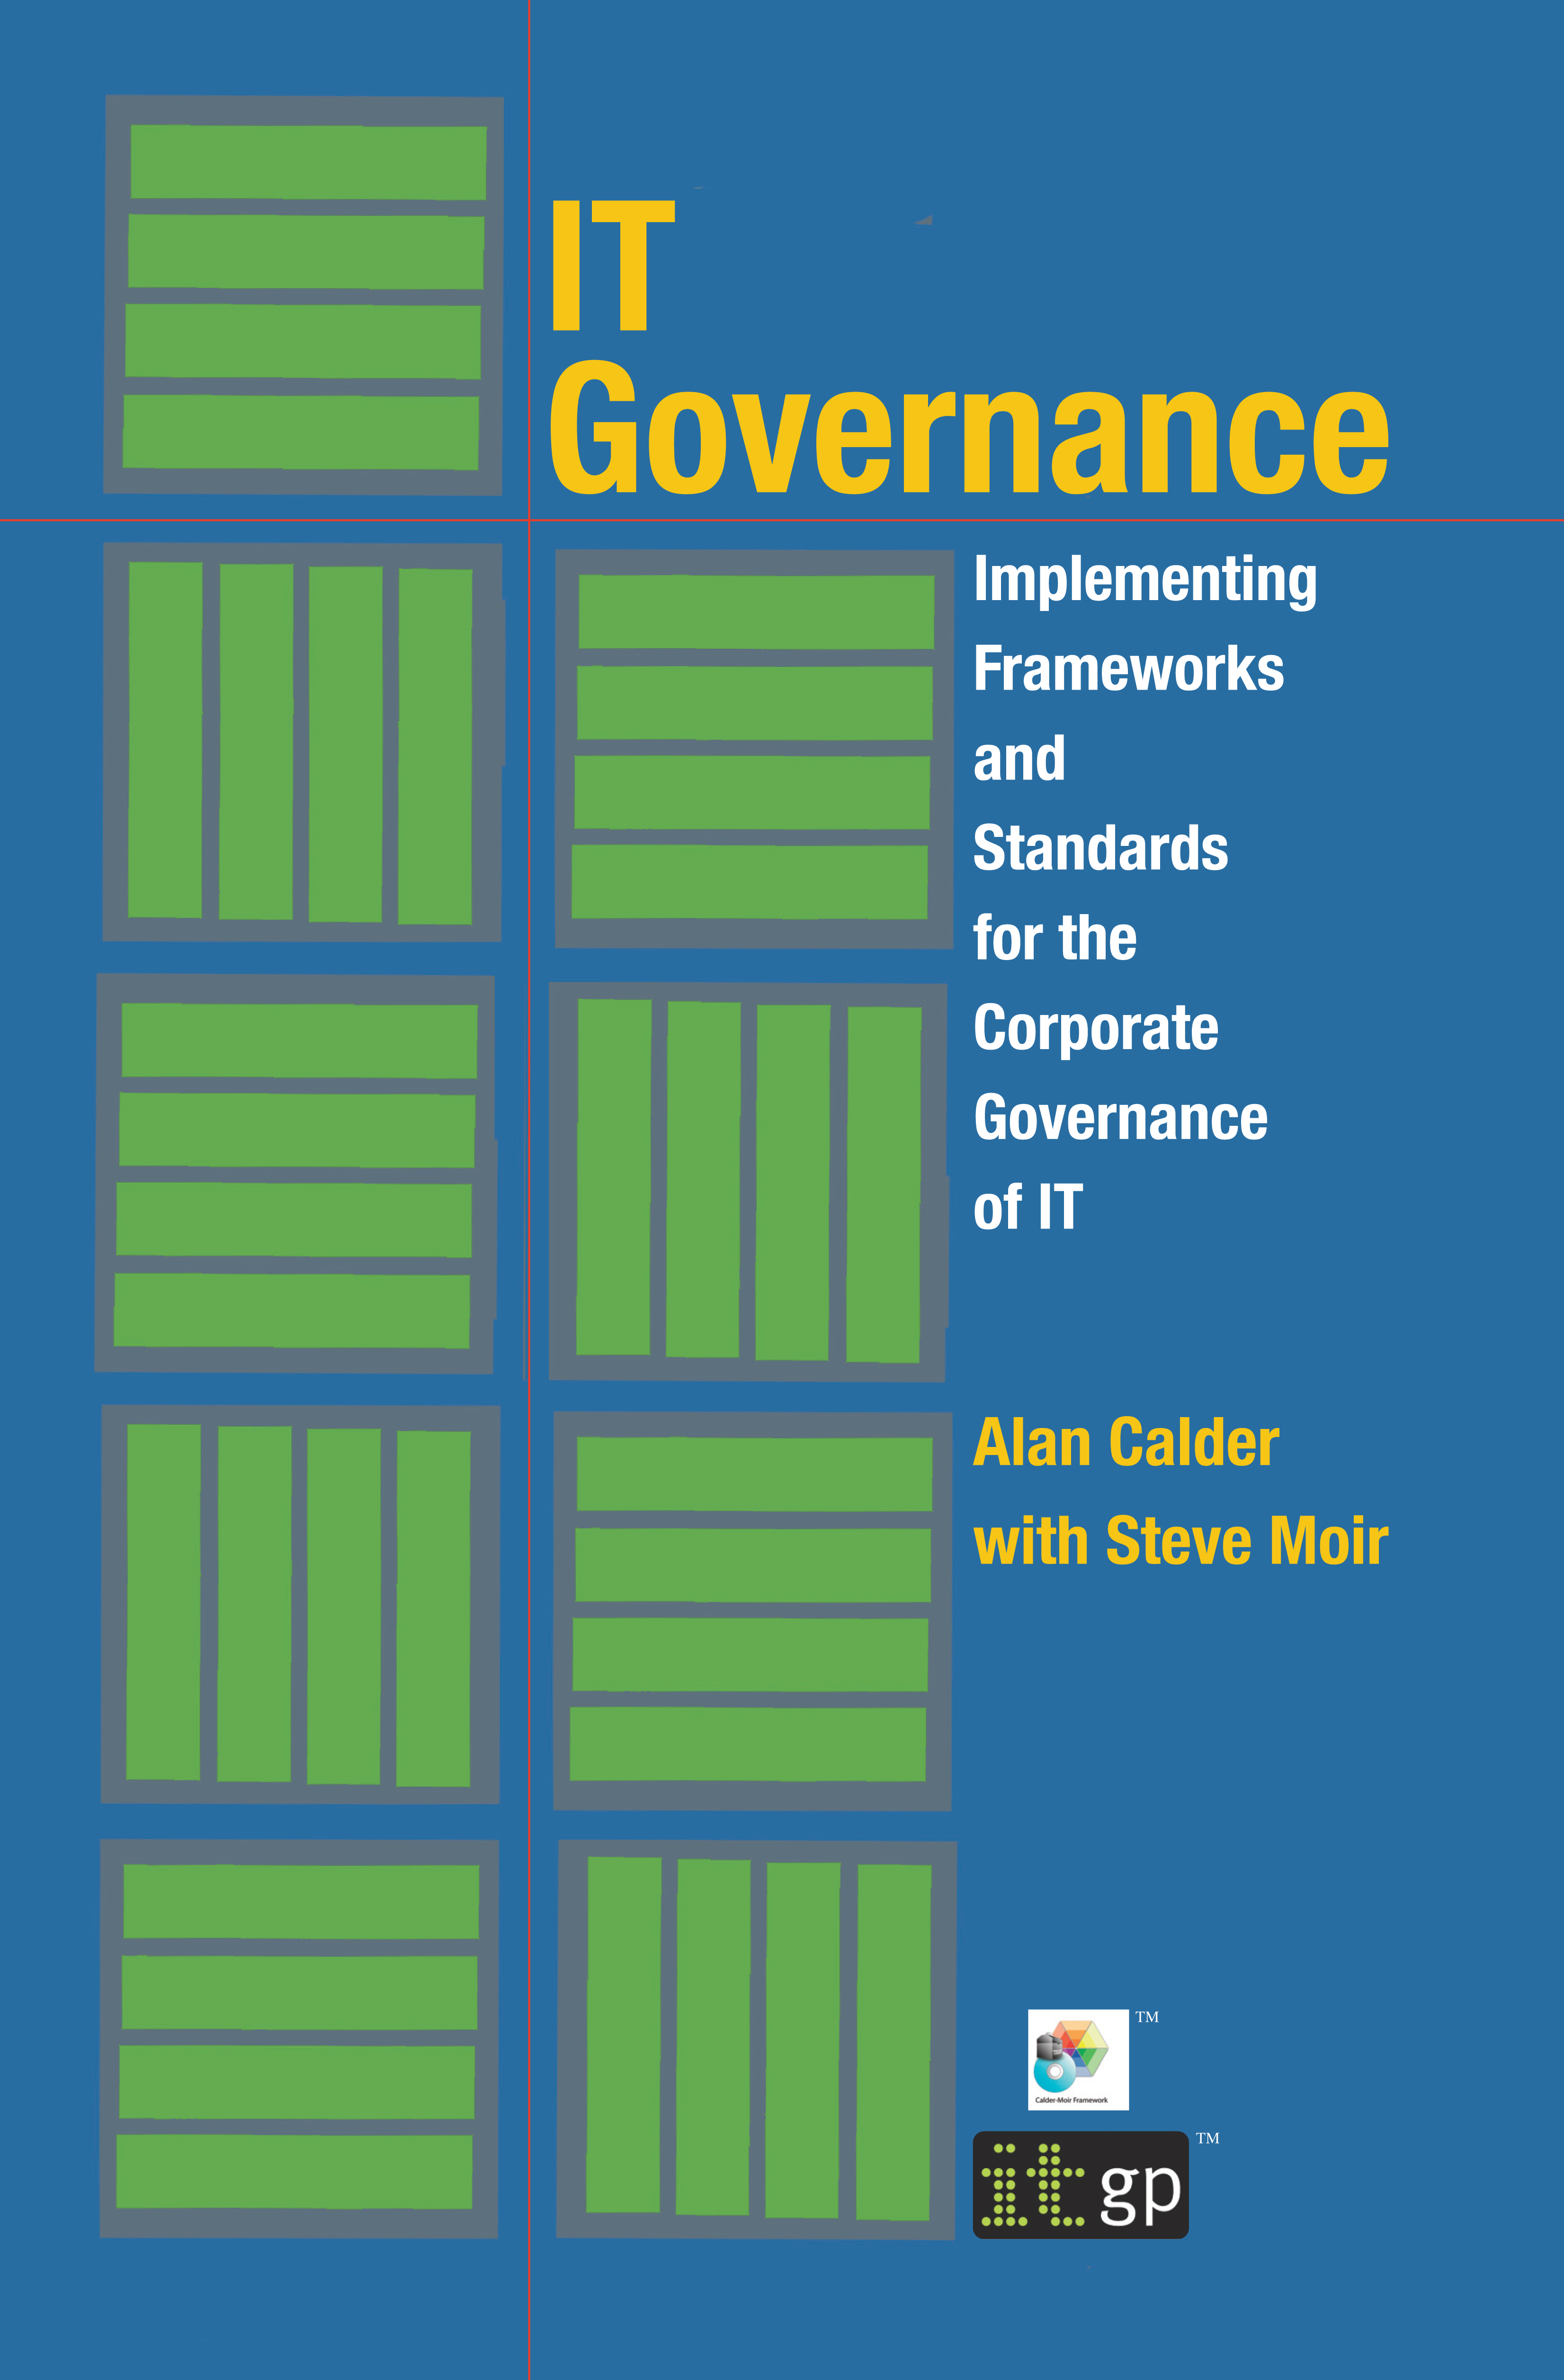 IT Governance - Alan Calder